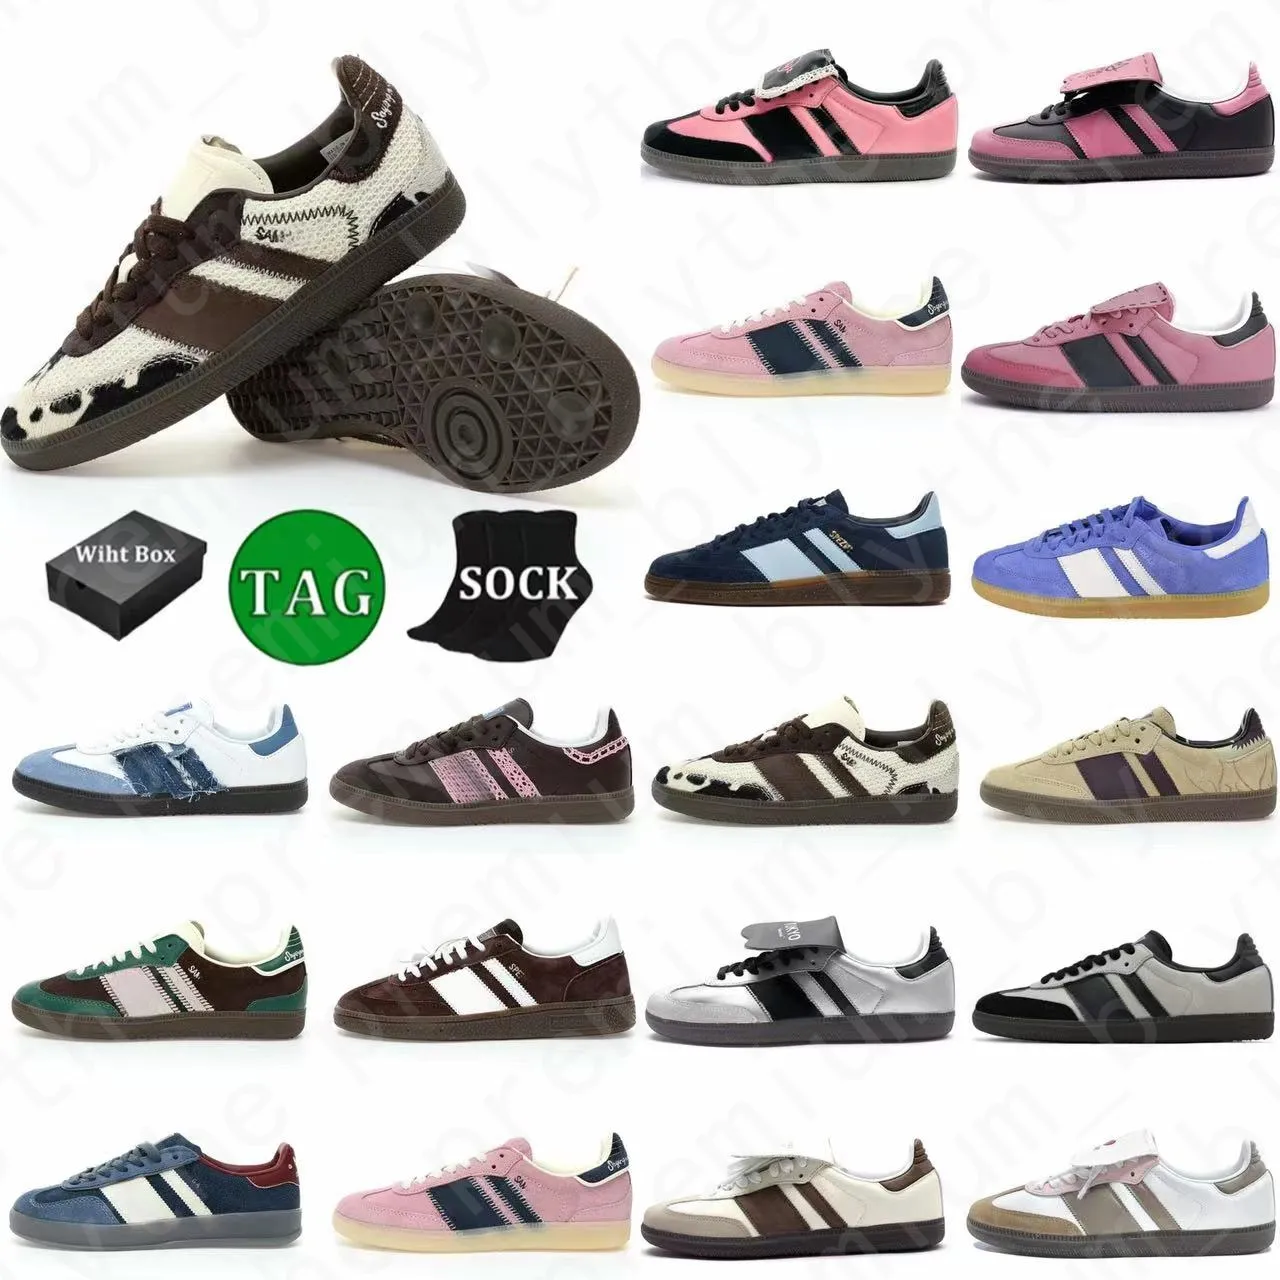 Kutu yeni stil tasarımcı ayakkabıları spel og ayakkabı Galler Bonners açık kaymaz dış taban sambas spor ayakkabılar spor eğitmenleri erkekler için gündelik ayakkabı kadınlar büyük boyut 36-45 gyu22